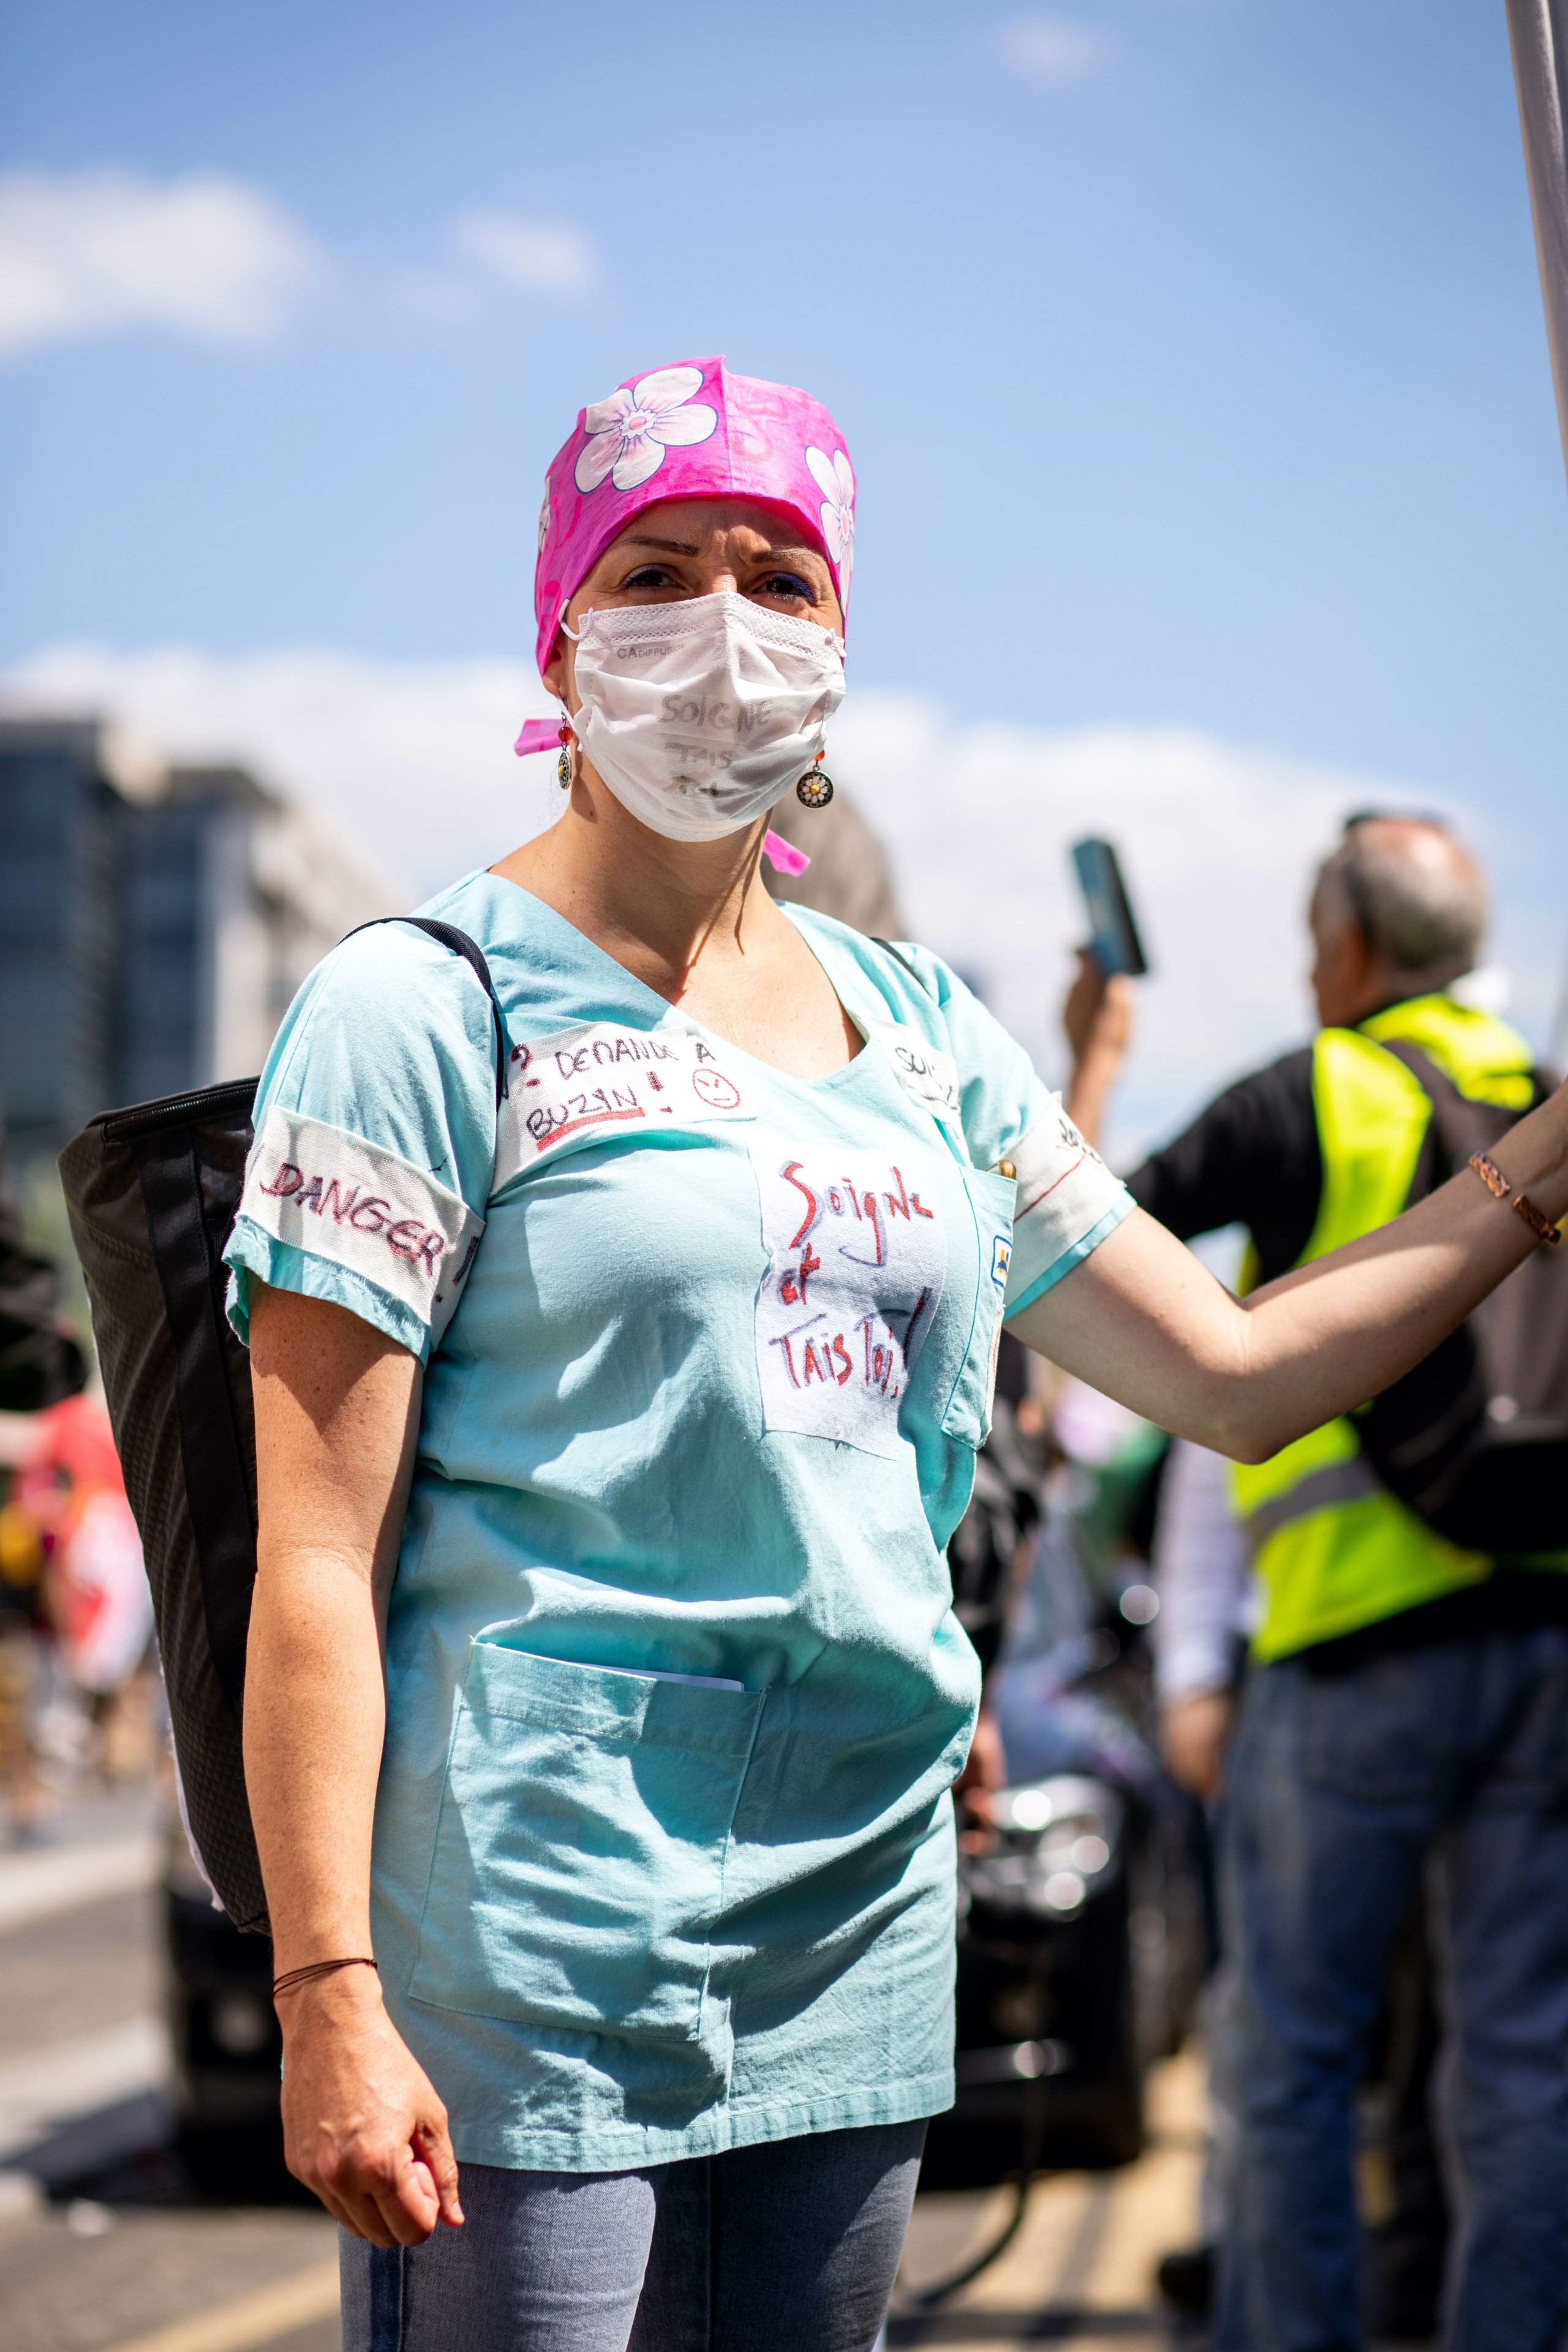 Journée nationale de manifestation des personnels de santé, lors de la grève des urgences, Paris, 2 juillet 2019. © Emma PROSDOCIMI/SIPA/1907021808